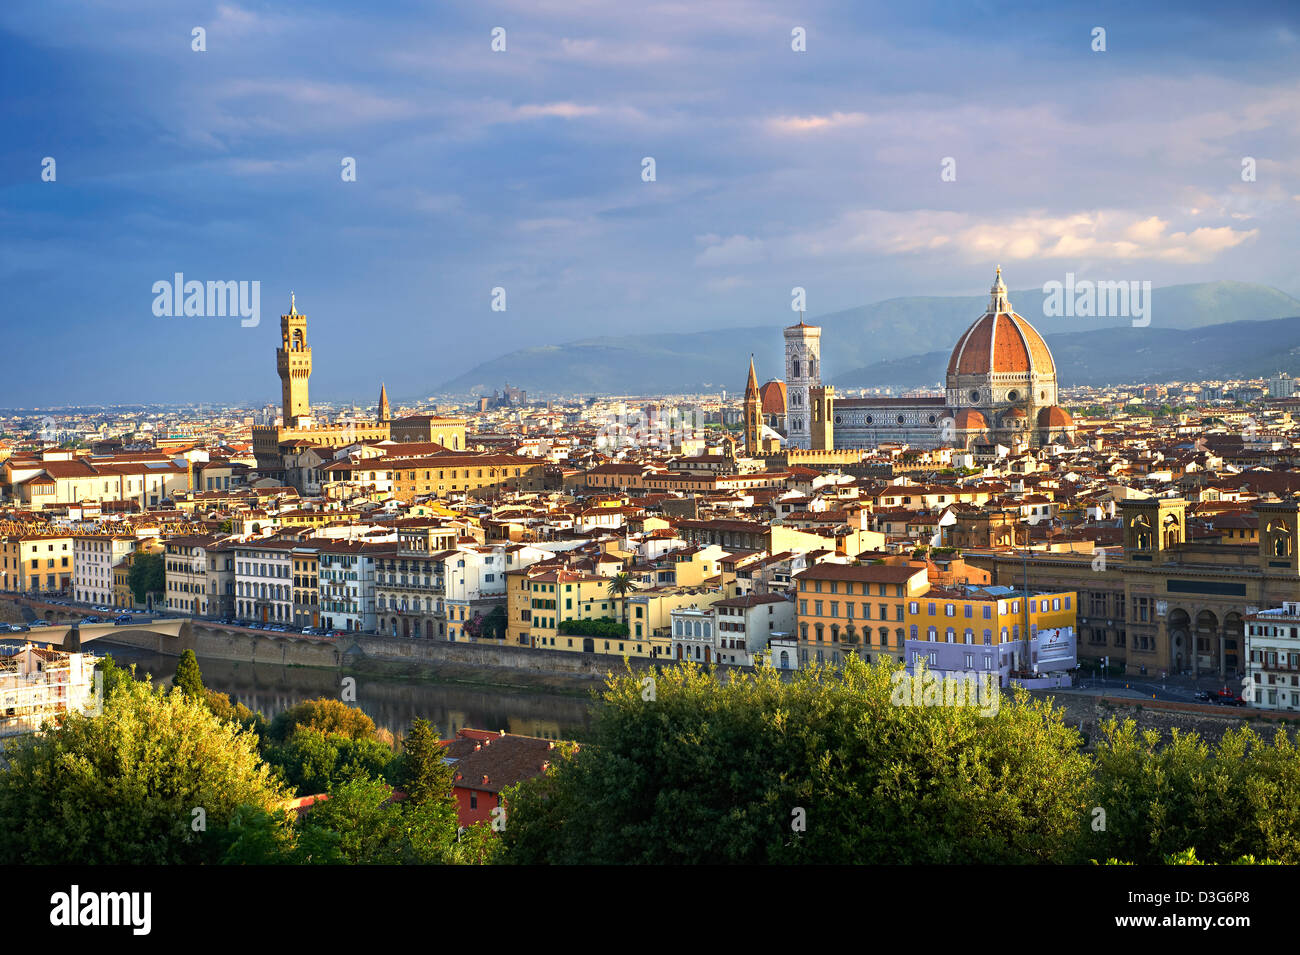 Vista panorámica de Florencia con el Palazzio Vecchio y el Duomo, Italia Foto de stock